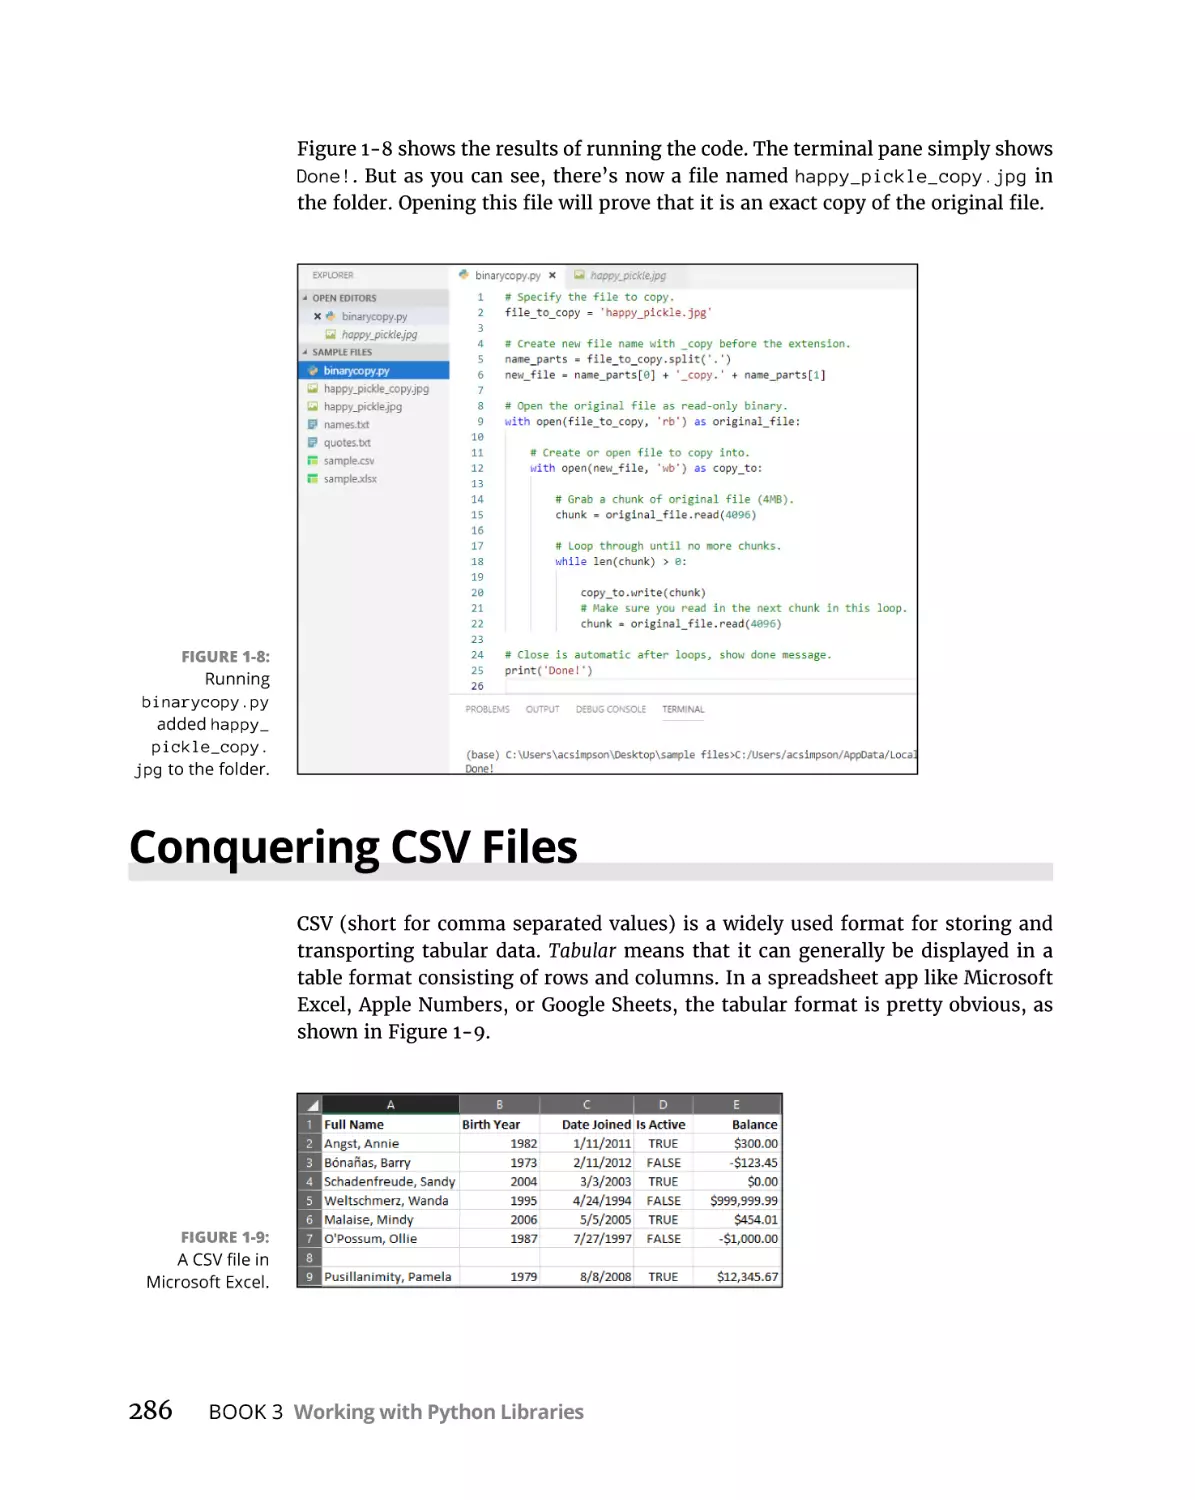 Conquering CSV Files